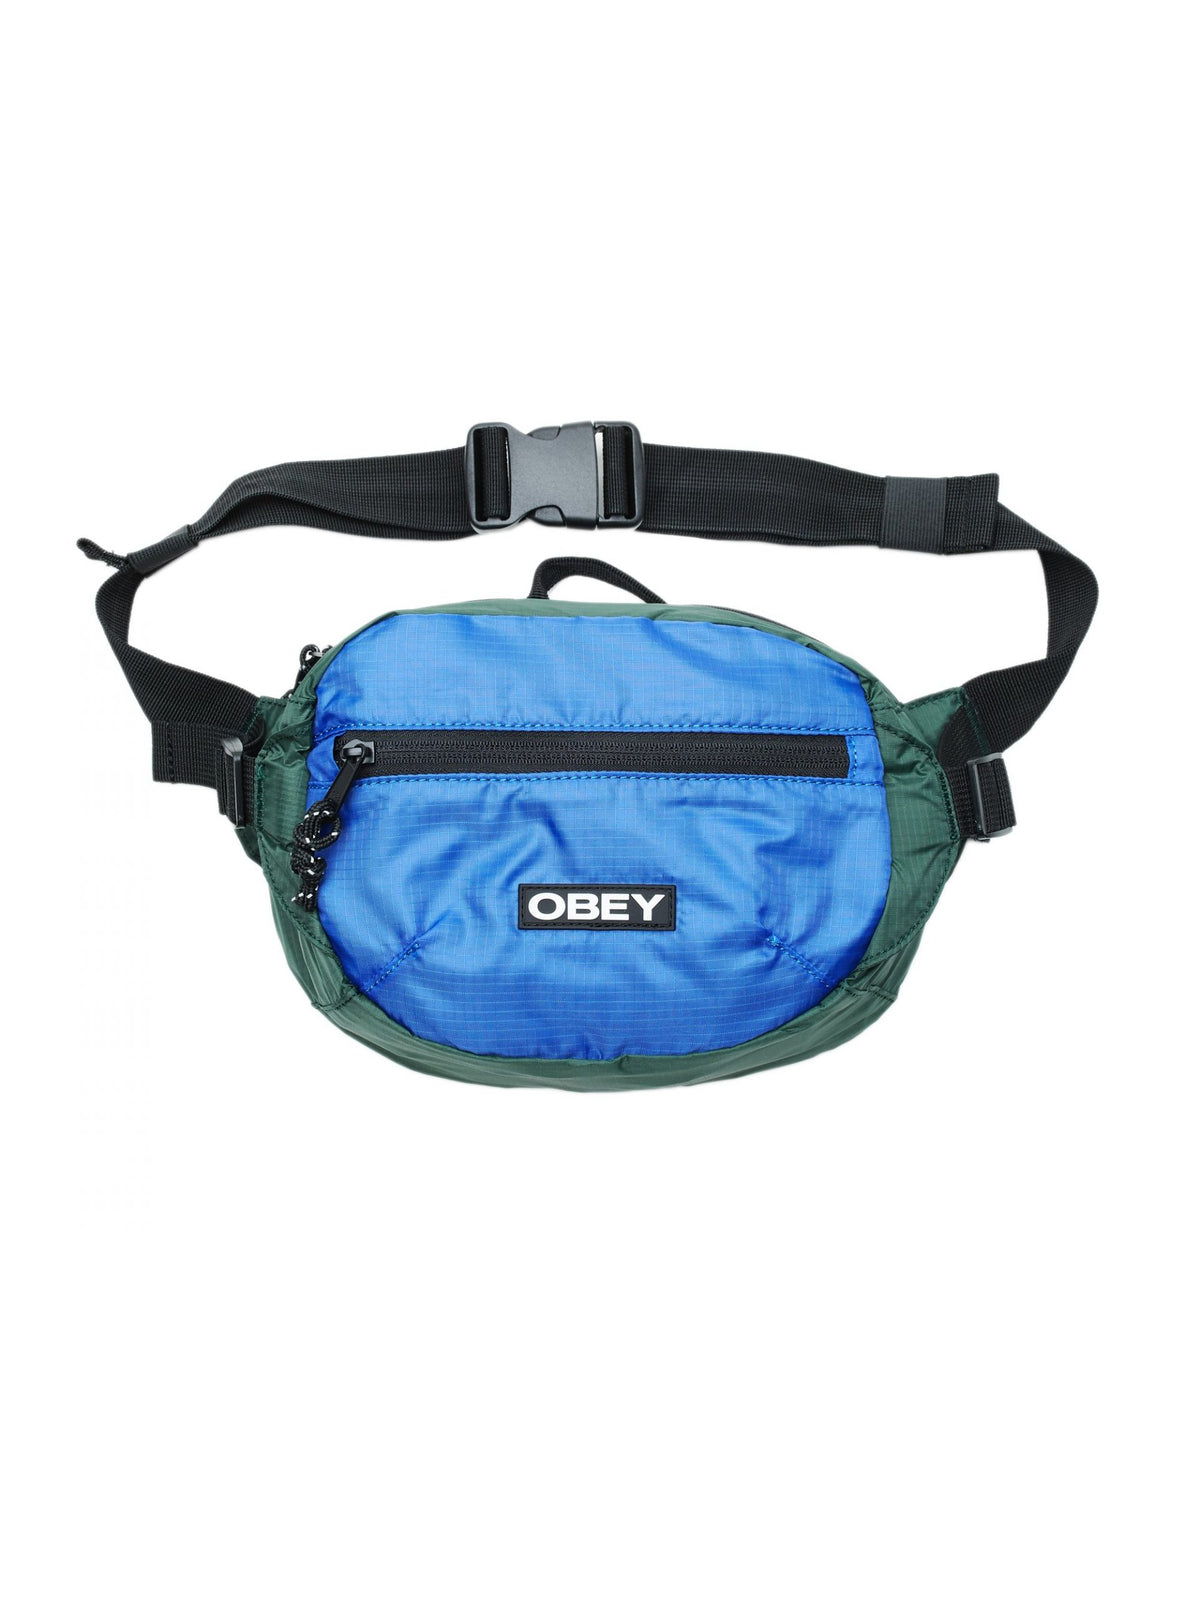 obey commuter waist bag